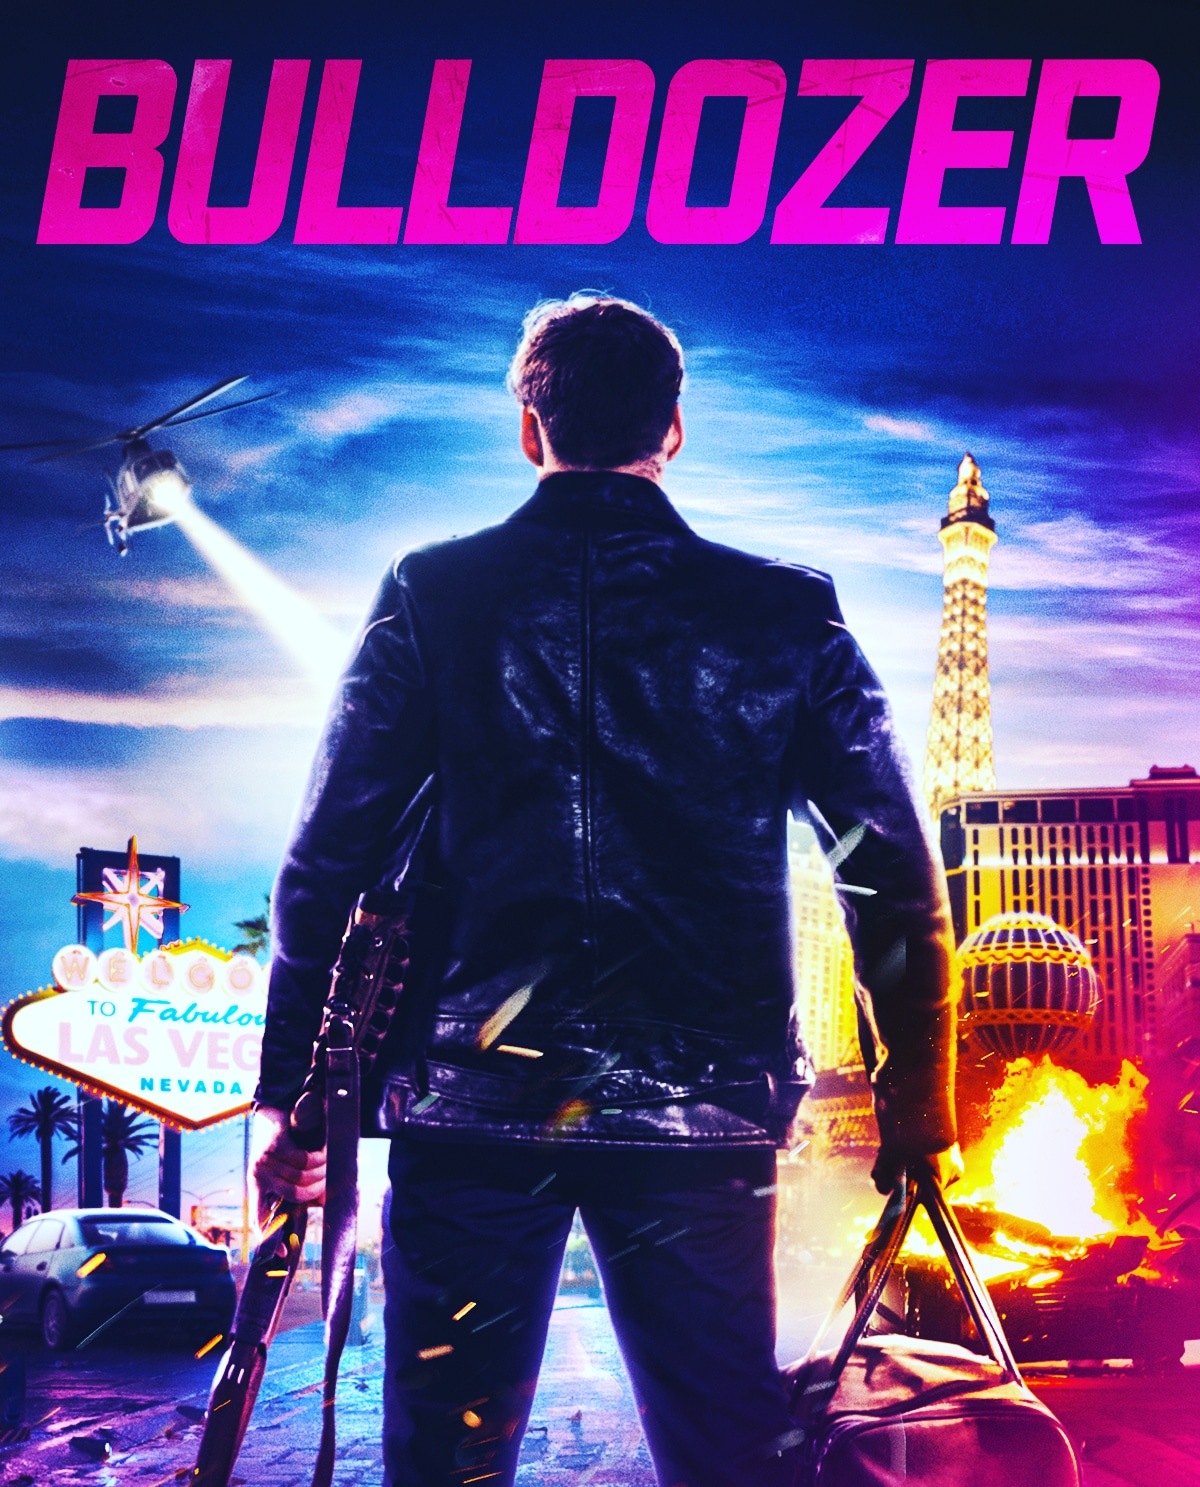 مشاهدة فيلم Bulldozer 2021 مترجم اون لاين